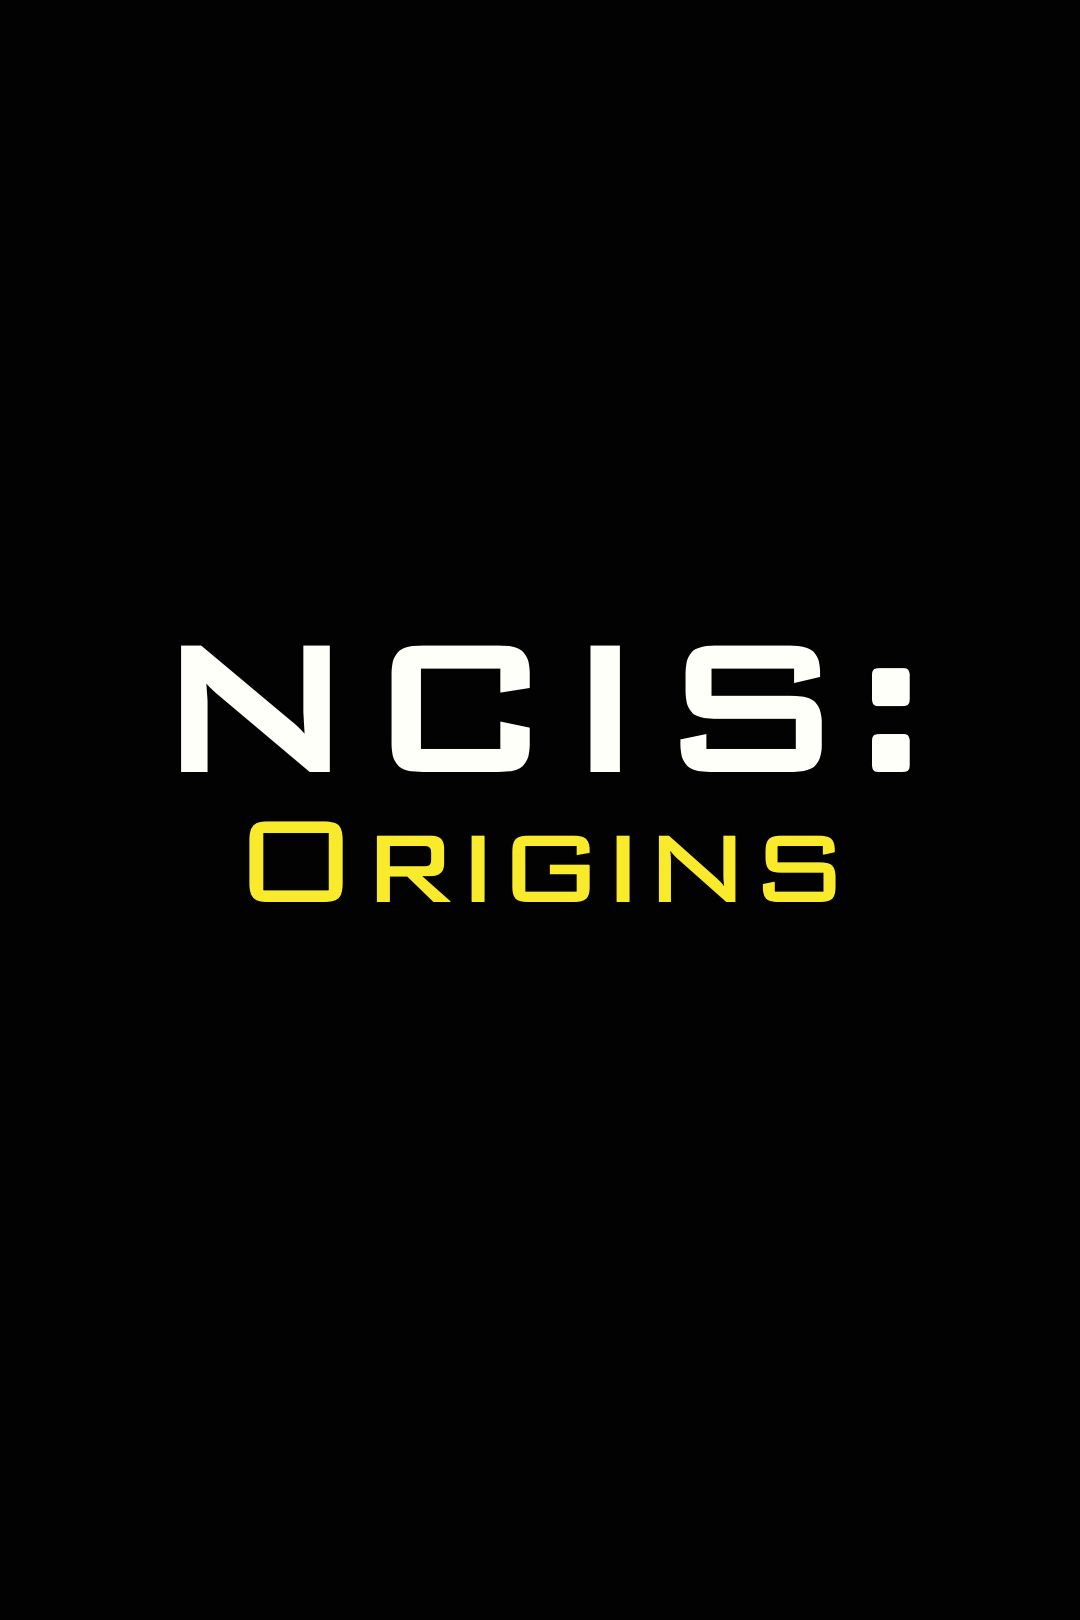 Pôster com logotipo temporário do NCIS Origins